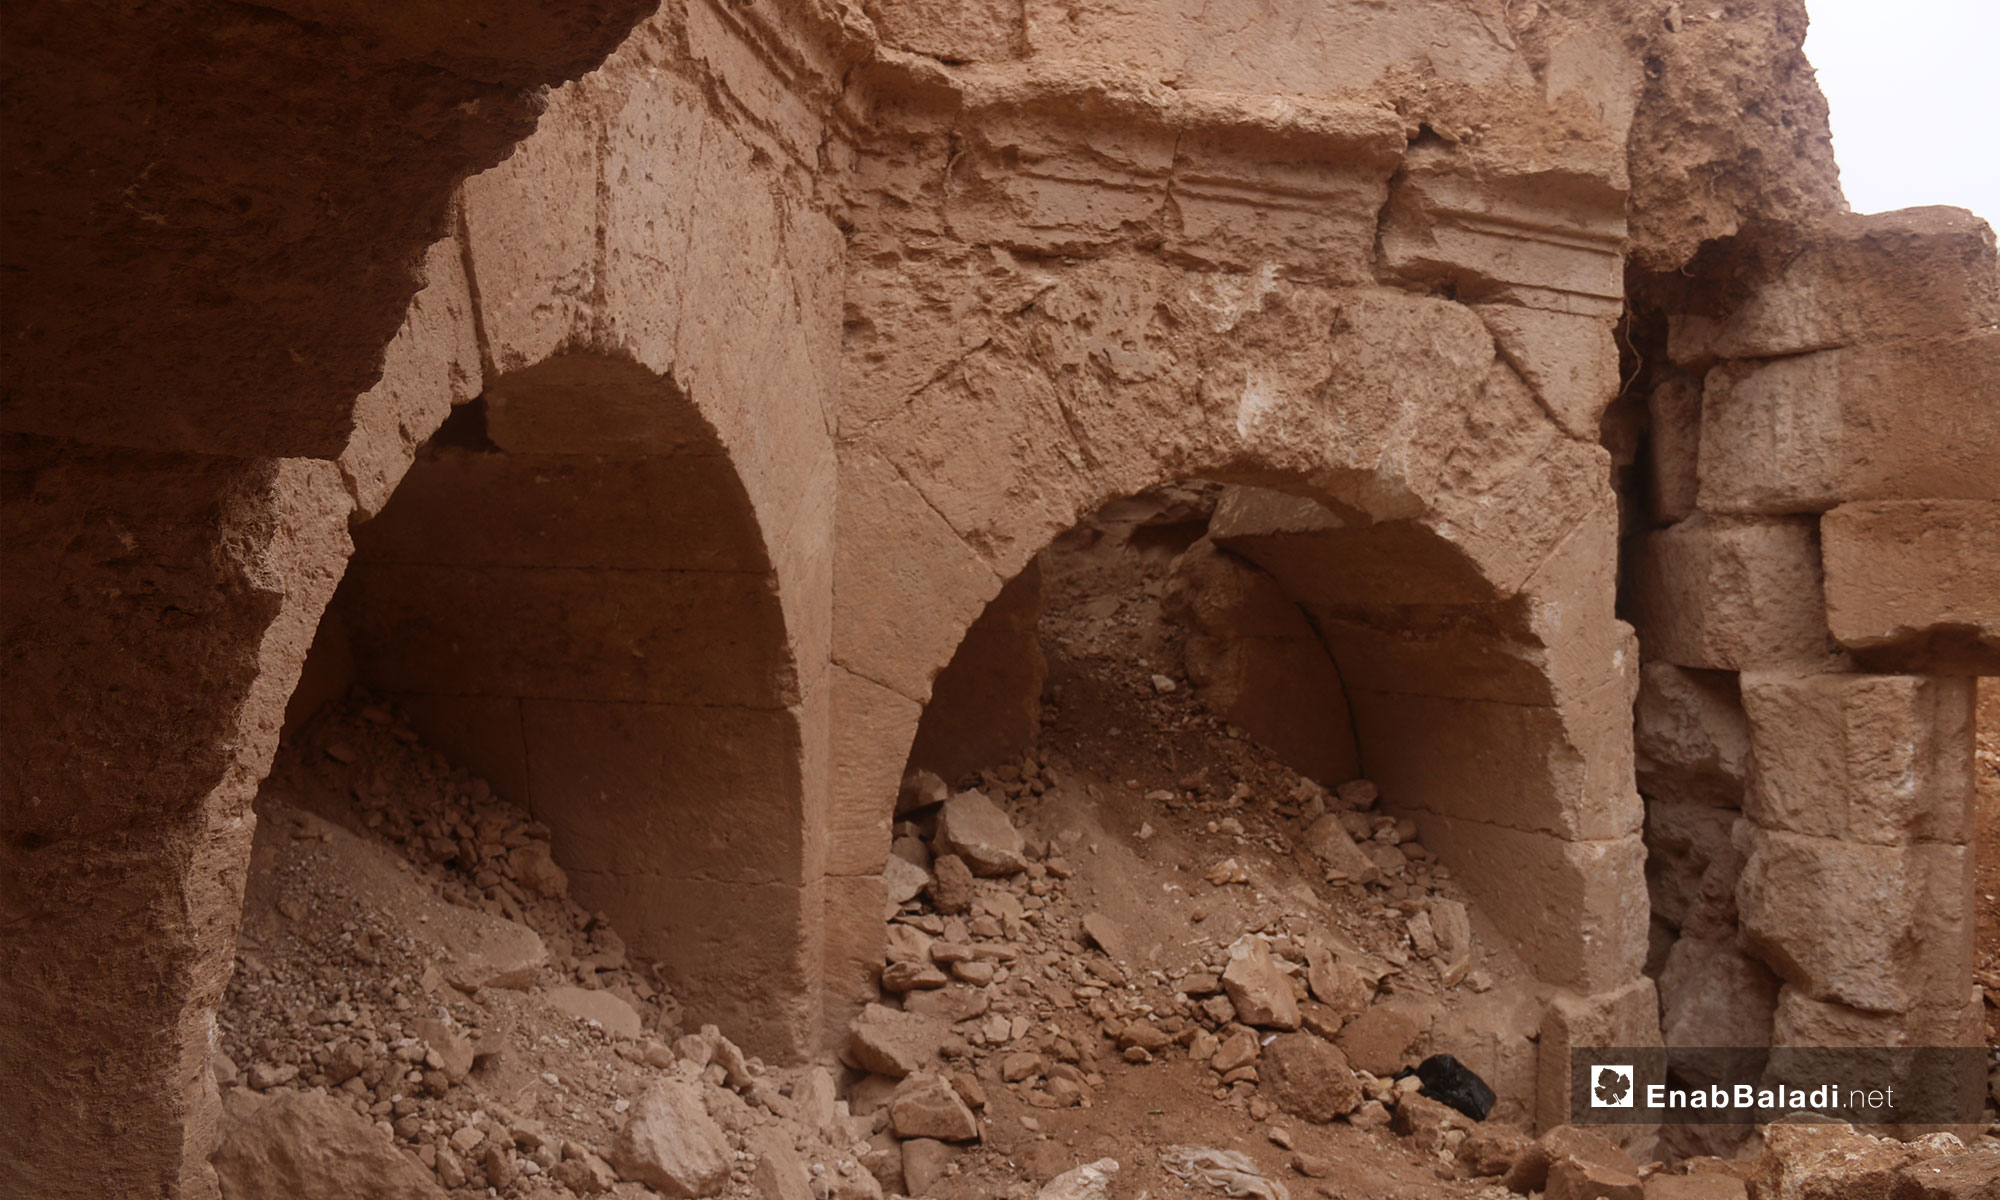 مقبرة تعود للعهد الروماني في بلدة جرجناز شرق معرة النعمان - 9 من تشرين الثاني 2018 (عنب بلدي)